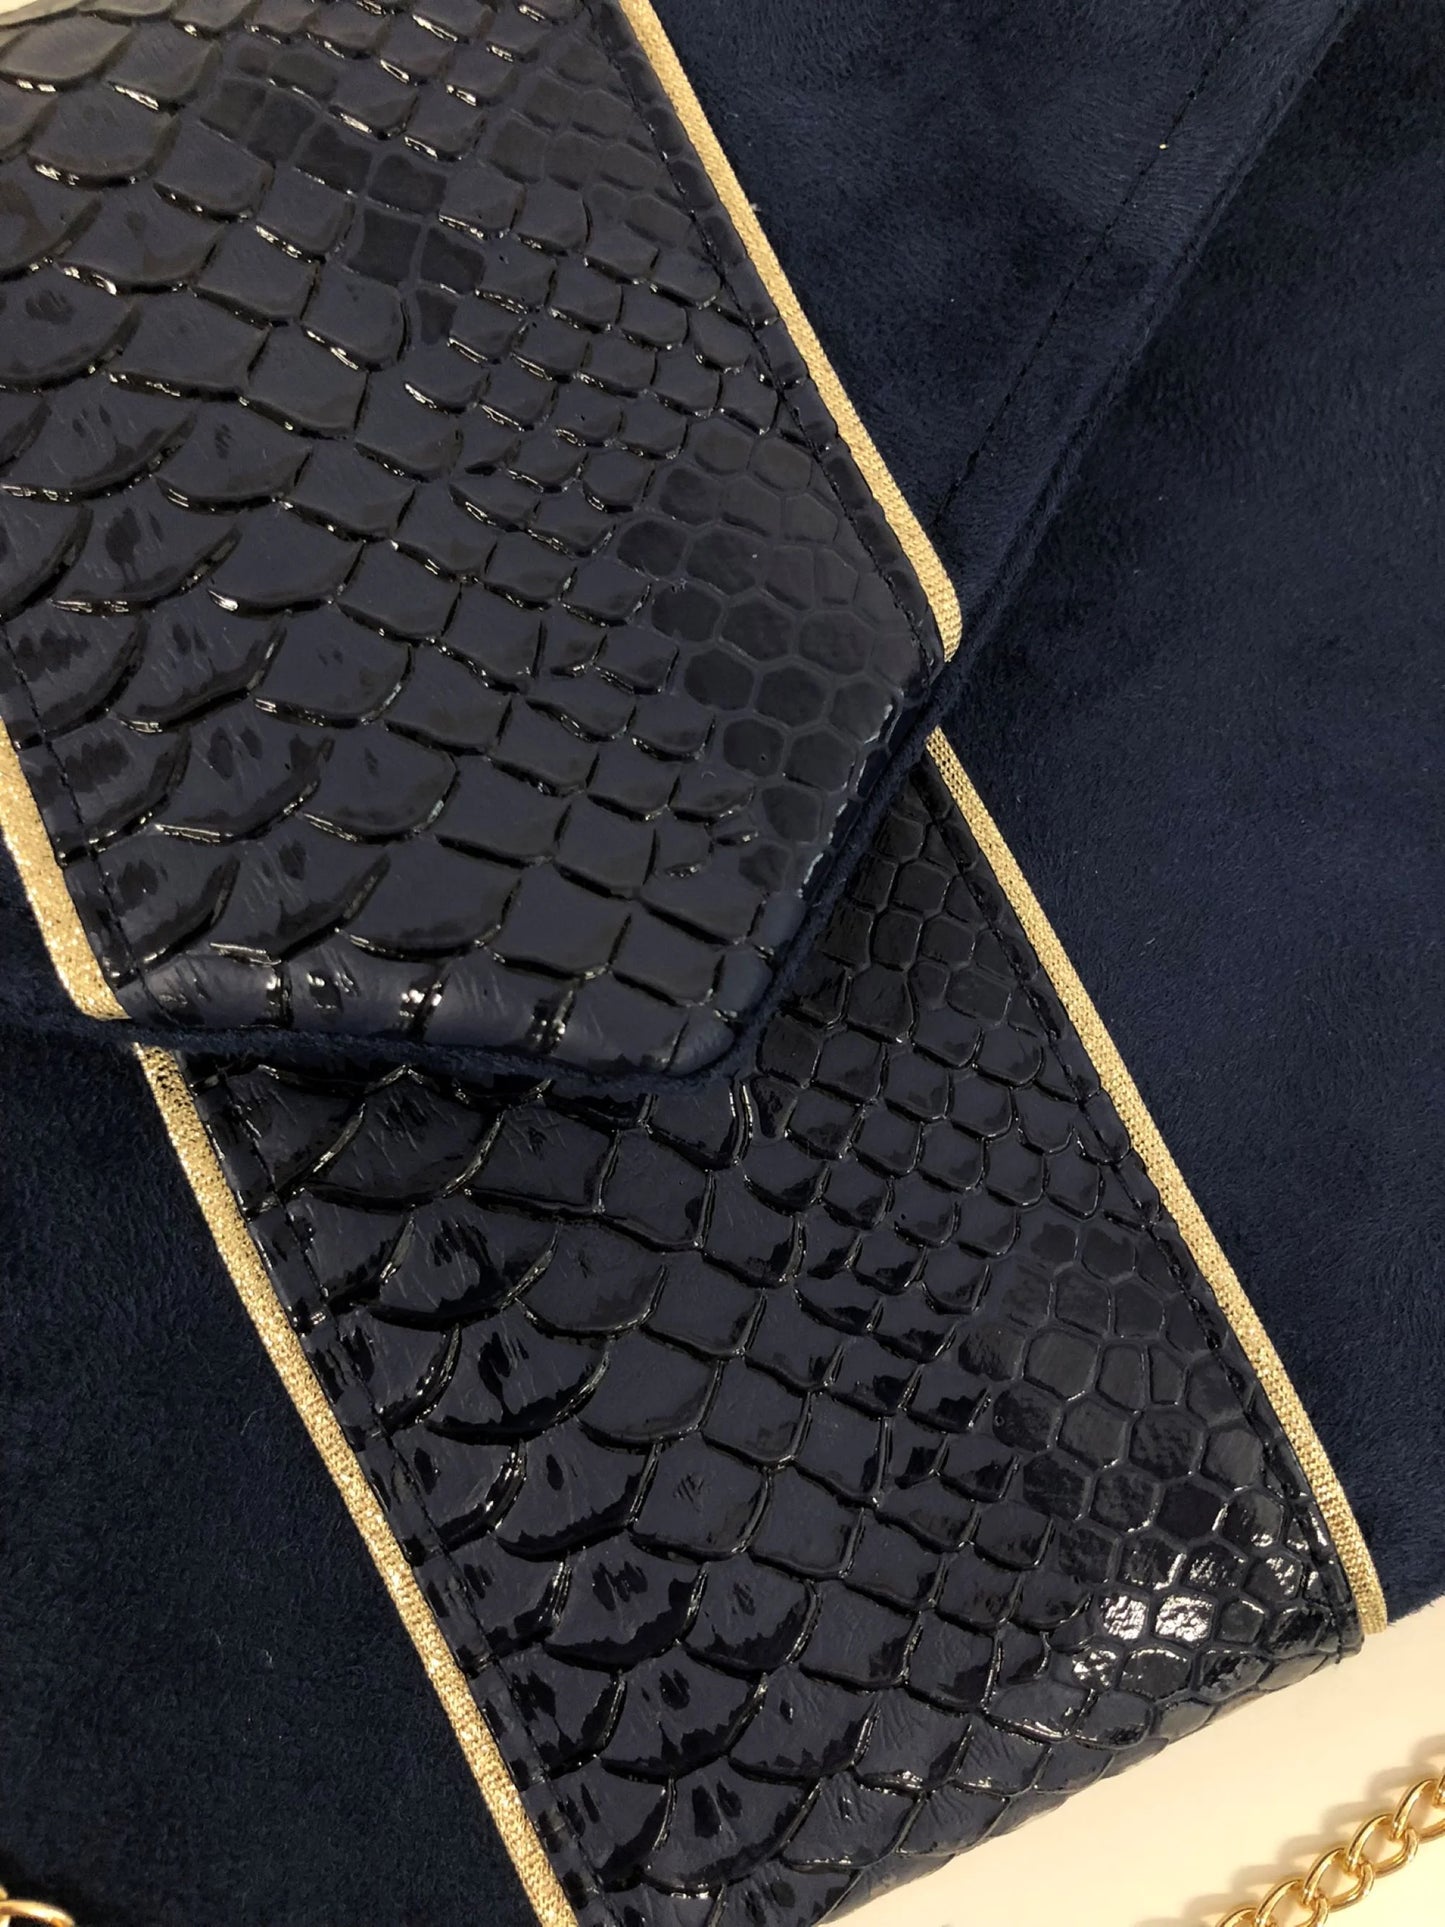 Vue détaillée du rabat du sac pochette Isa bleu marine reptile à liseré doré.